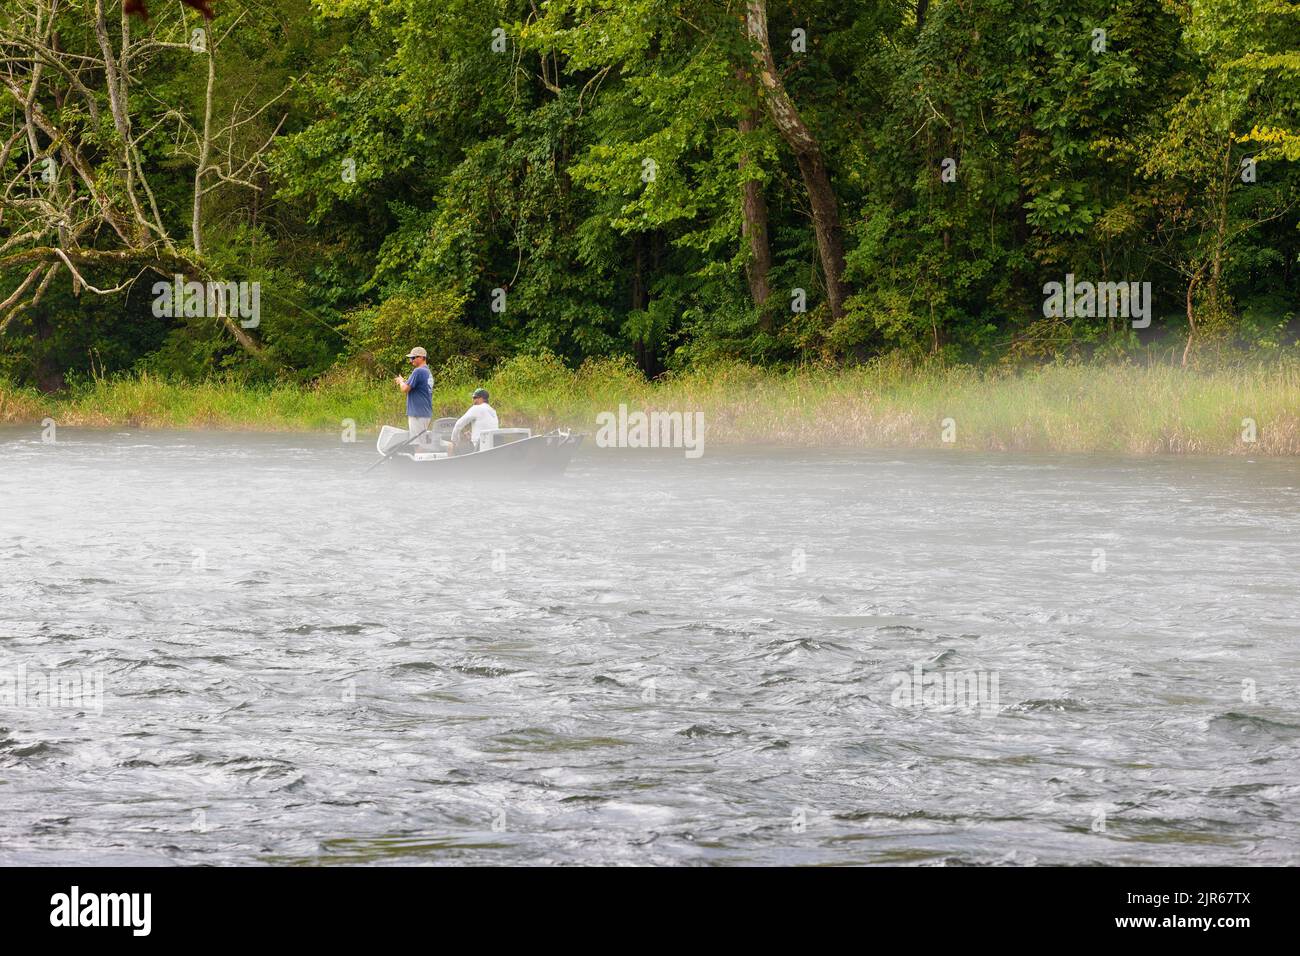 Bristol, Tennessee, EE.UU. - Autust 16, 2022: Dos mn de pesca desde un barco anclado en el río South Holston cerca de Bristol, Tennessee Foto de stock